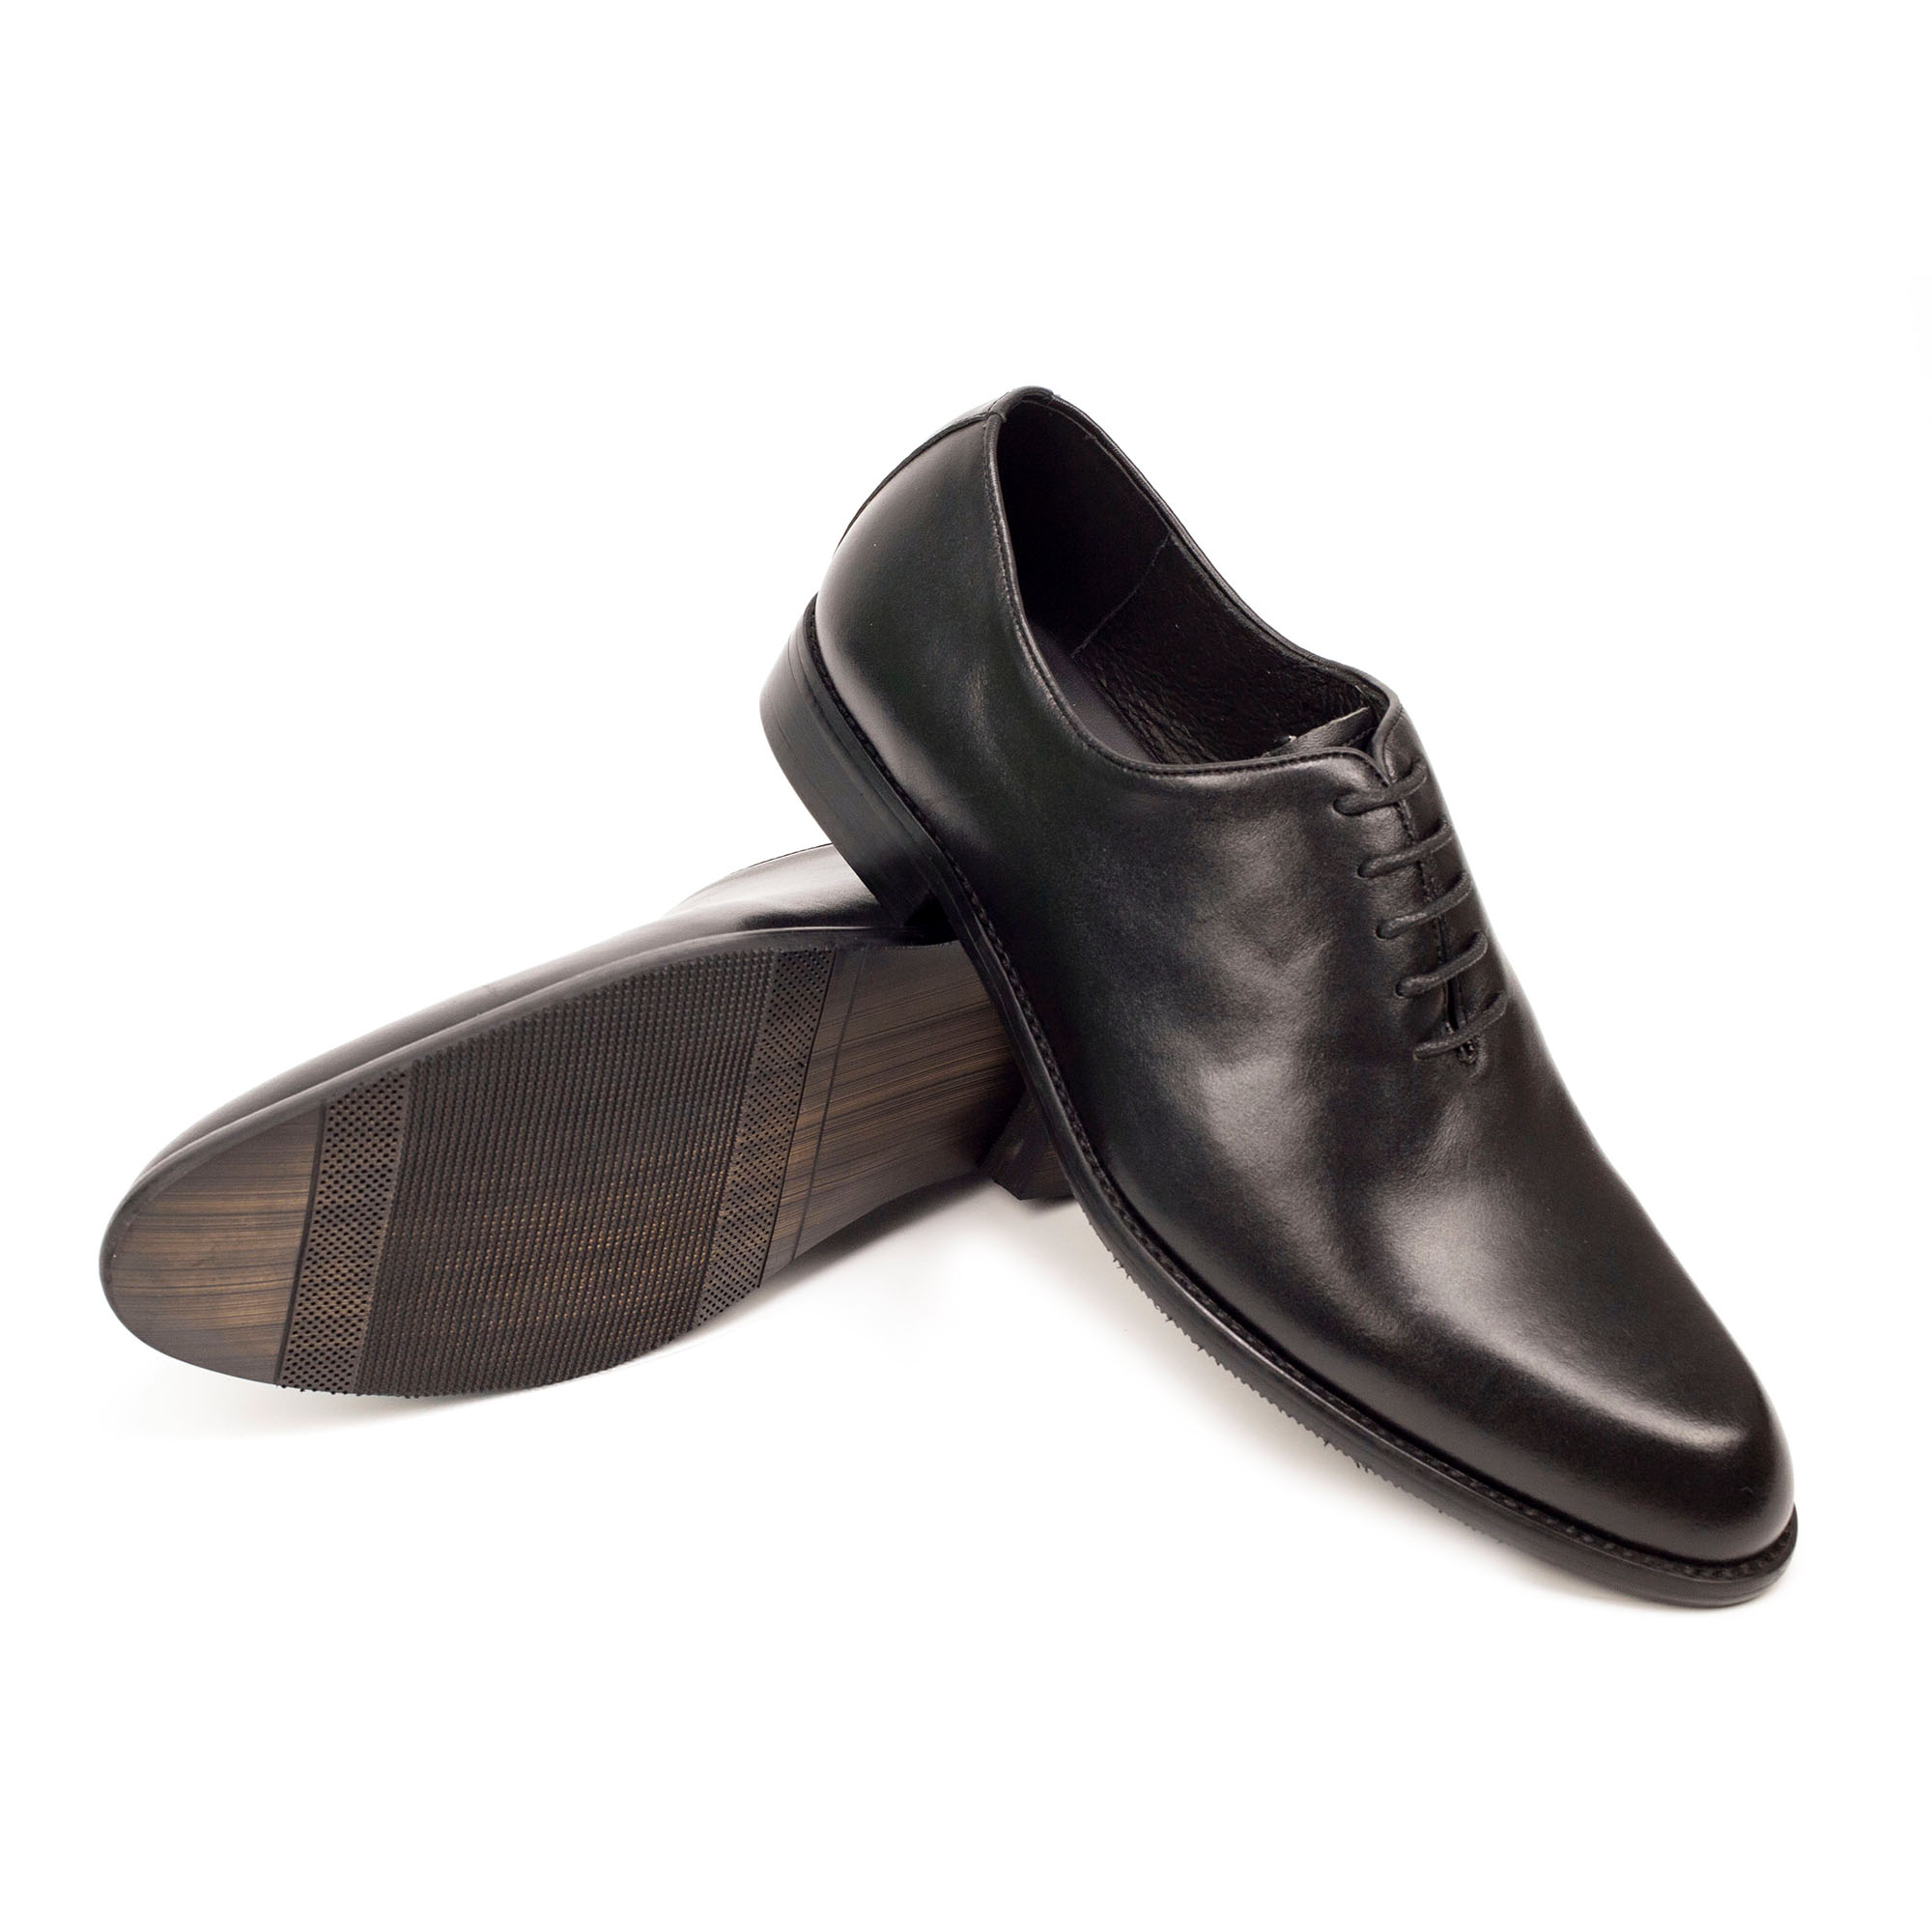 Giày da nam, giày oxford công sở Bụi Leather G102 - Da bò Nappa cao cấp - Bảo hành 12 tháng